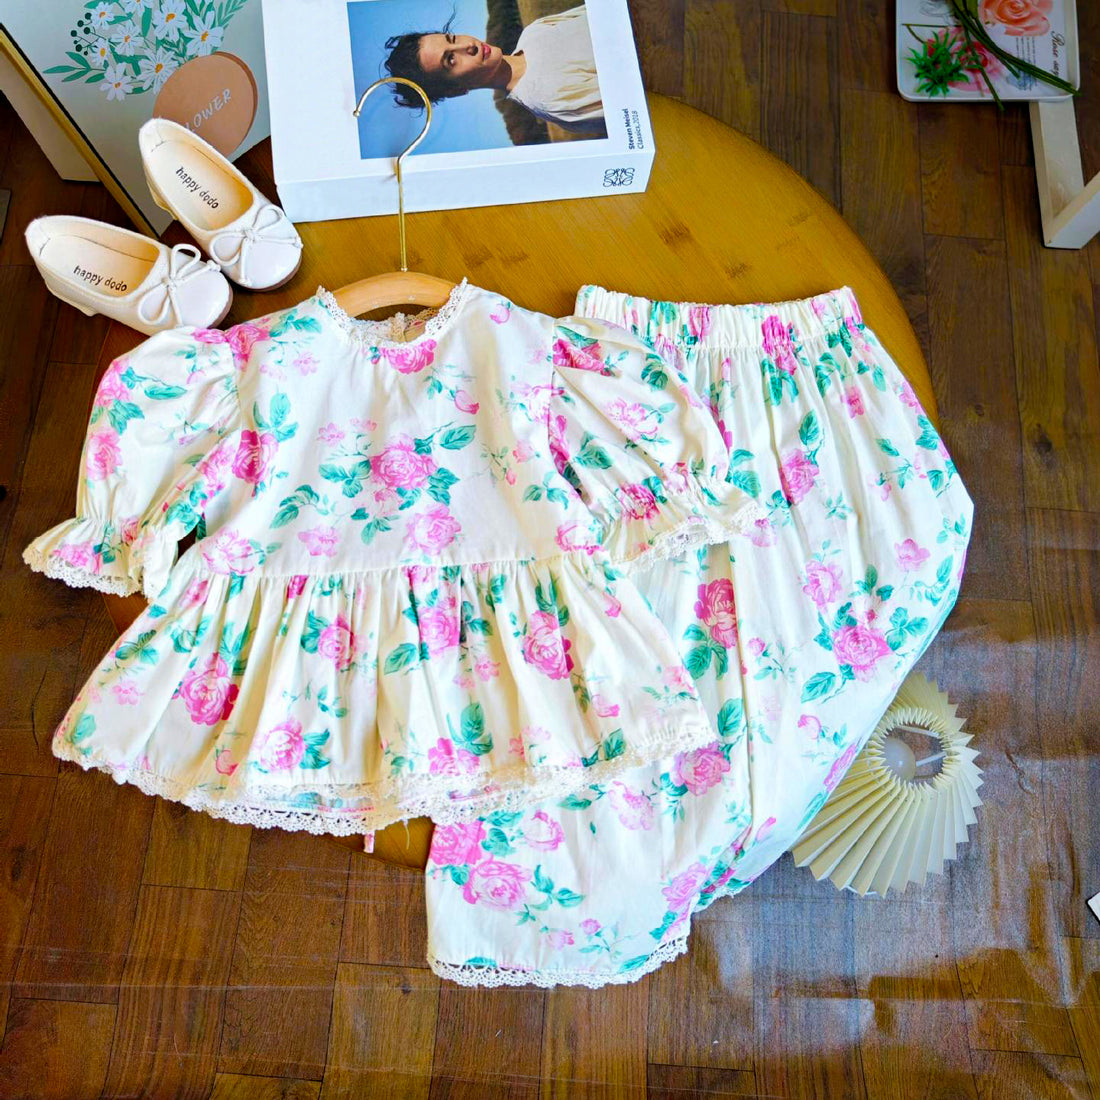 [363739] - Setelan Baju Blouse Lengan Pendek Celana Panjang Fashion Anak Perempuan - Motif Flower Lace